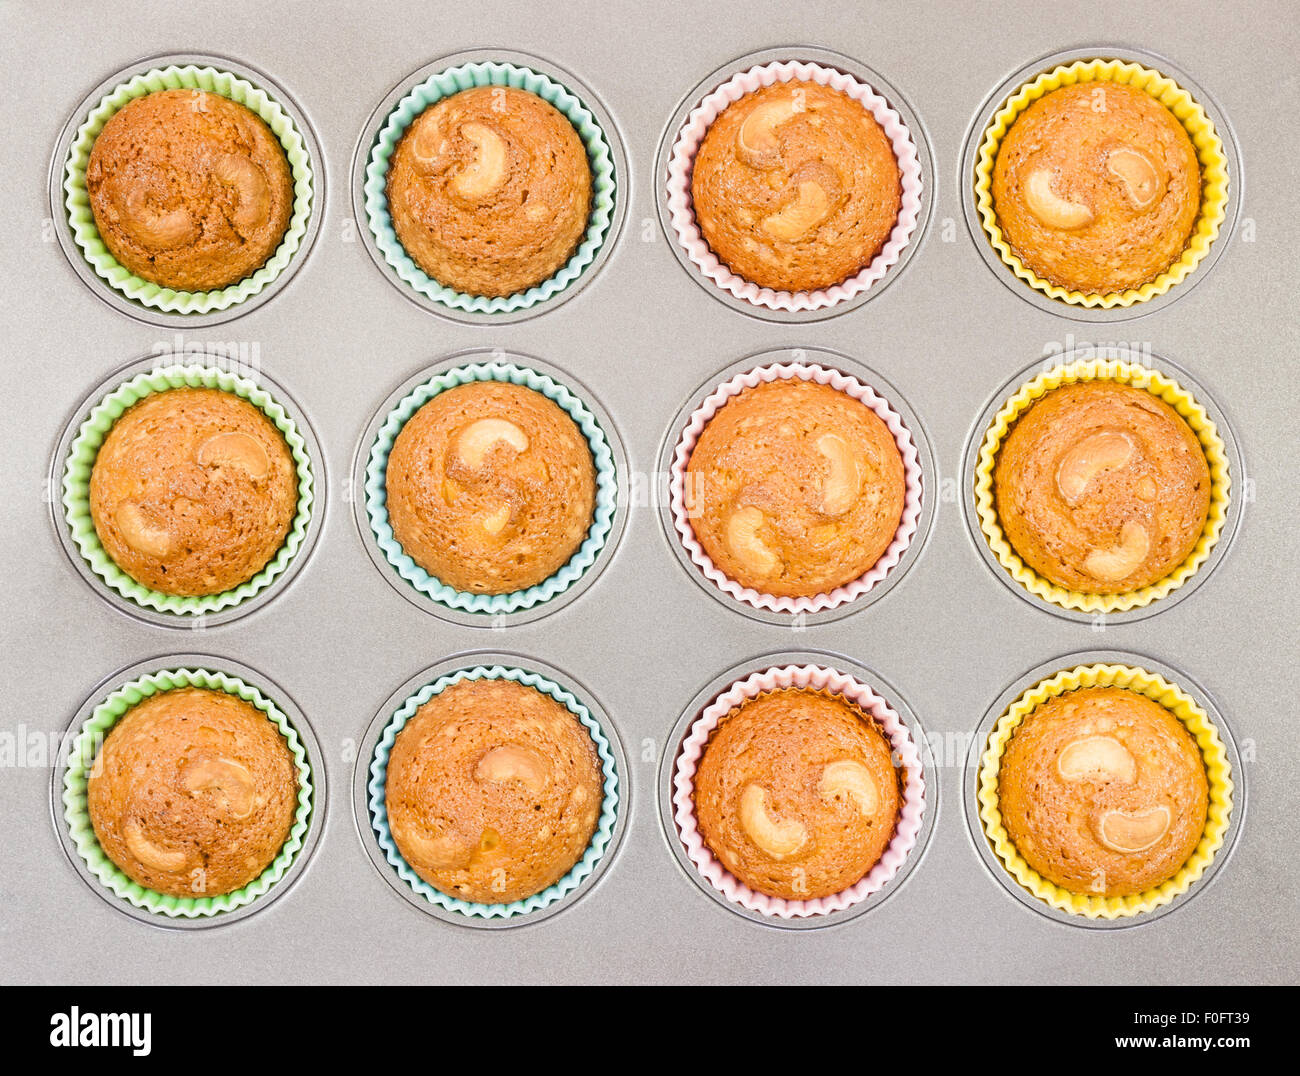 Eine Draufsicht des köstlichen golden braun verkrustet Cashew-Cupcakes gebacken in einer Schale mit Silikon Cups. Stockfoto